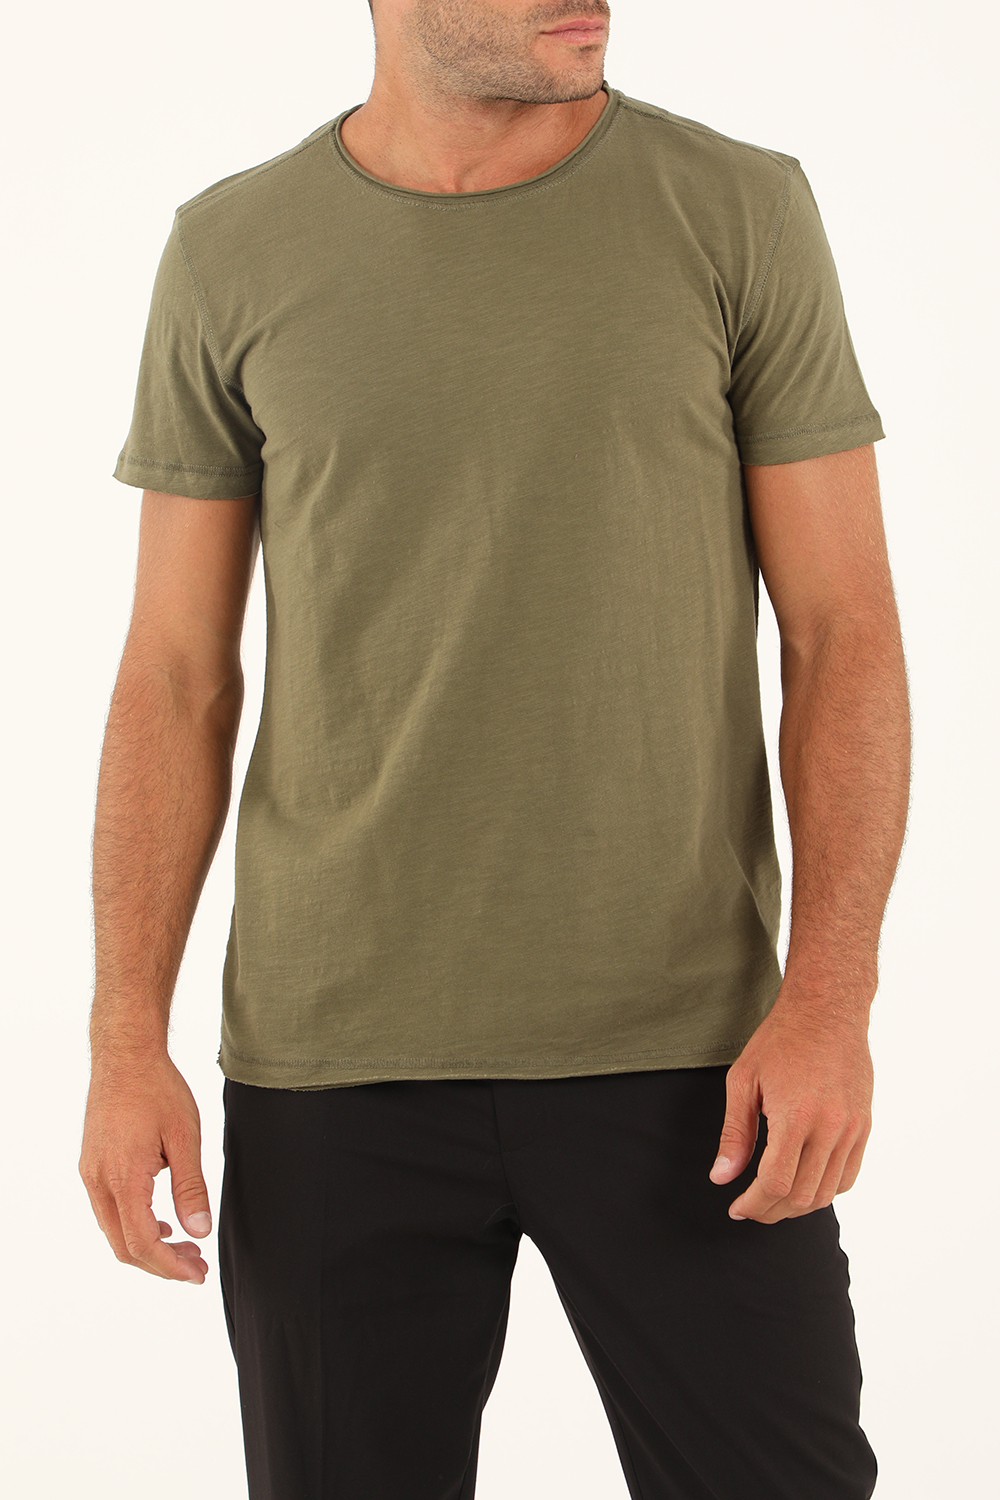 Ανδρικά/Ρούχα/Μπλούζες/Κοντομάνικες GABBA - Ανδρικό t-shirt GABBA Konrad Straight χακί